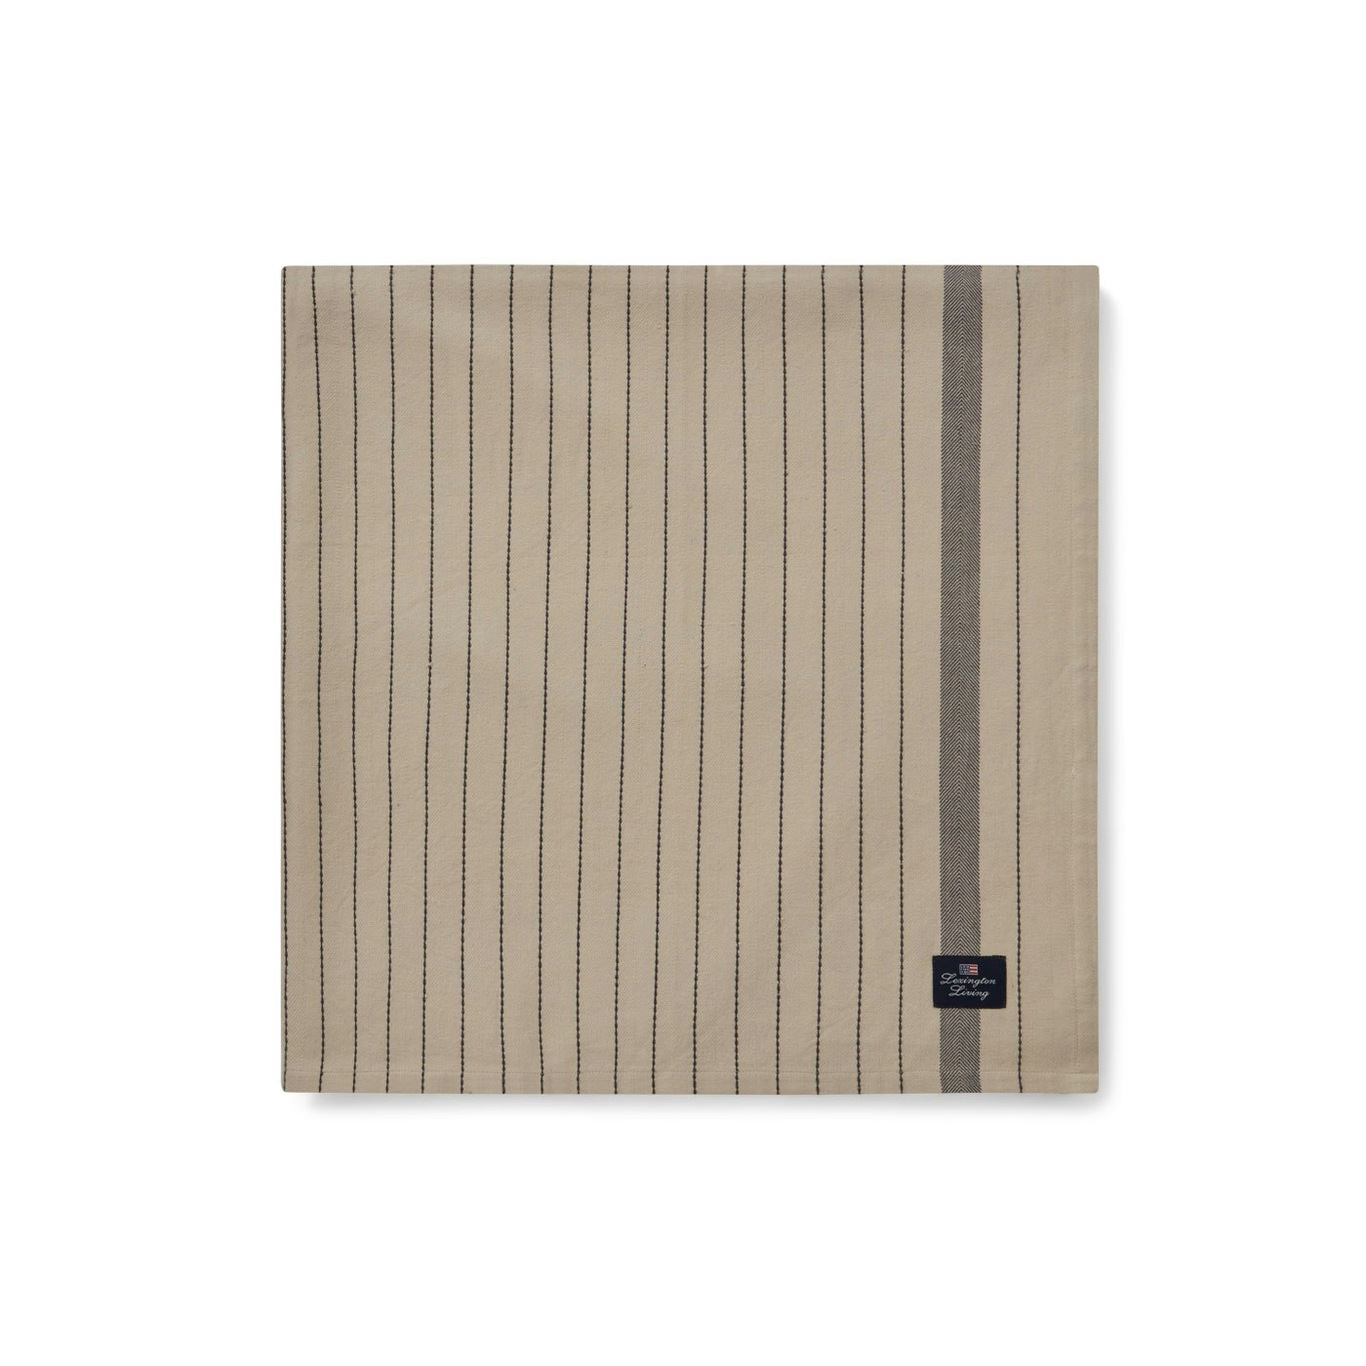 Striped Organic Cotton Tischdecke Beige/Dunkelgrau, 150x250 cm